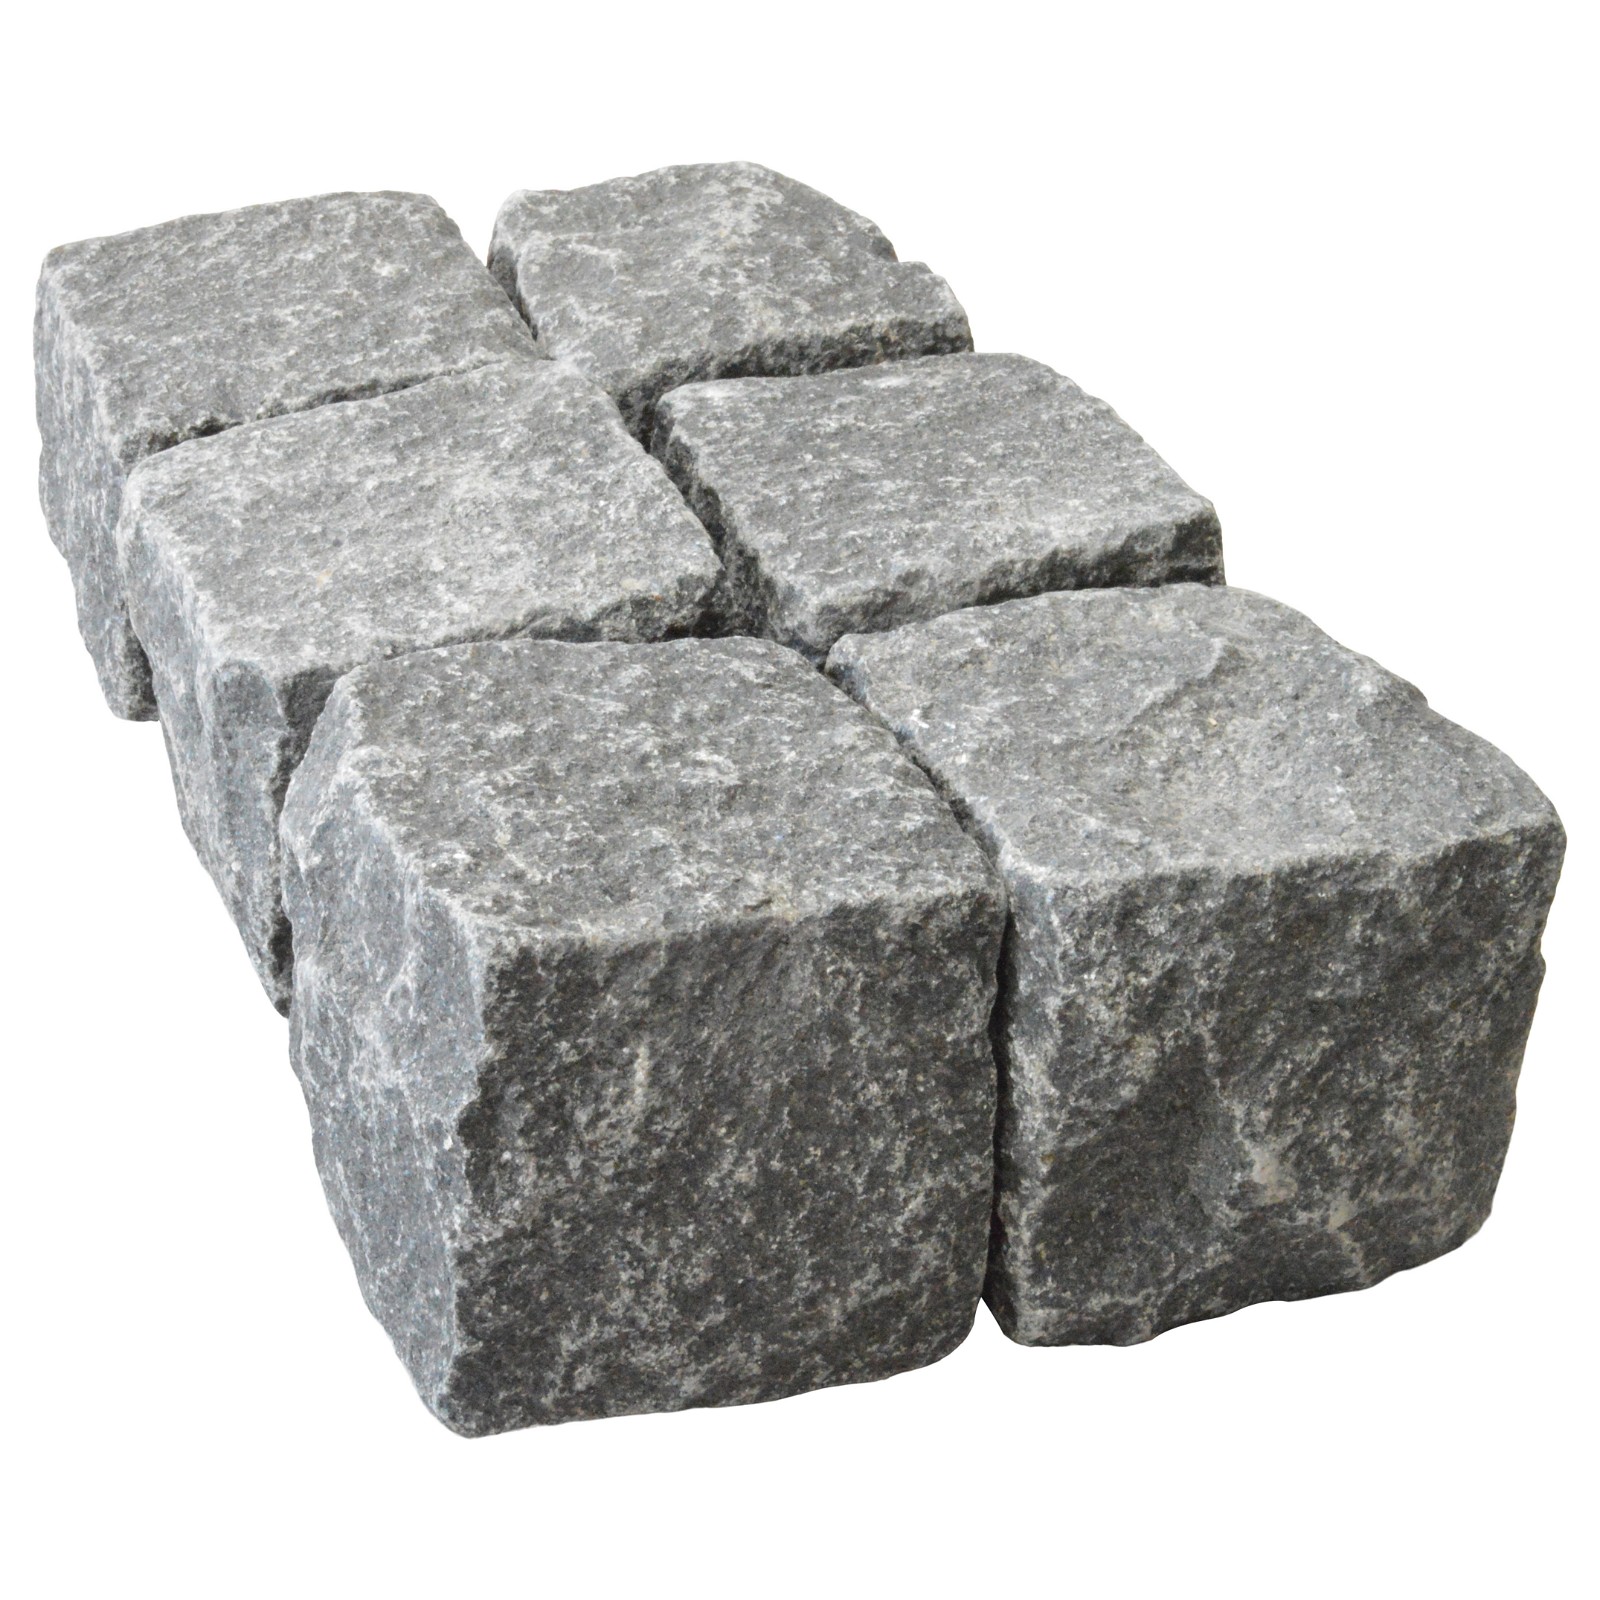 Granit Chaussesten Sort Indisk 9-12cm i BIG BAG